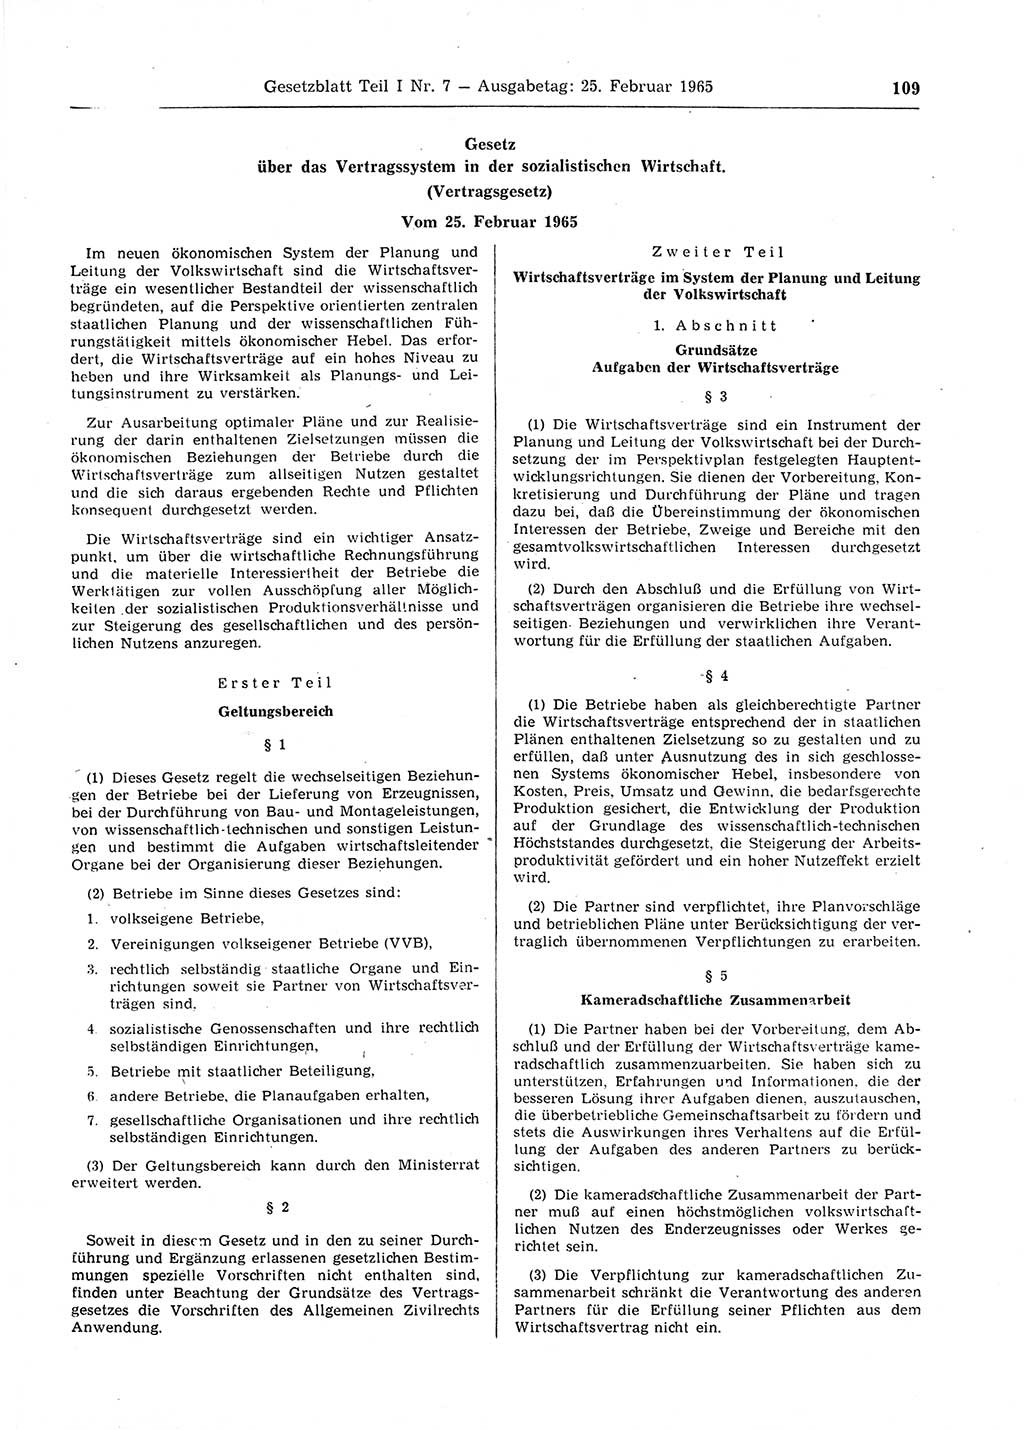 Gesetzblatt (GBl.) der Deutschen Demokratischen Republik (DDR) Teil Ⅰ 1965, Seite 109 (GBl. DDR Ⅰ 1965, S. 109)